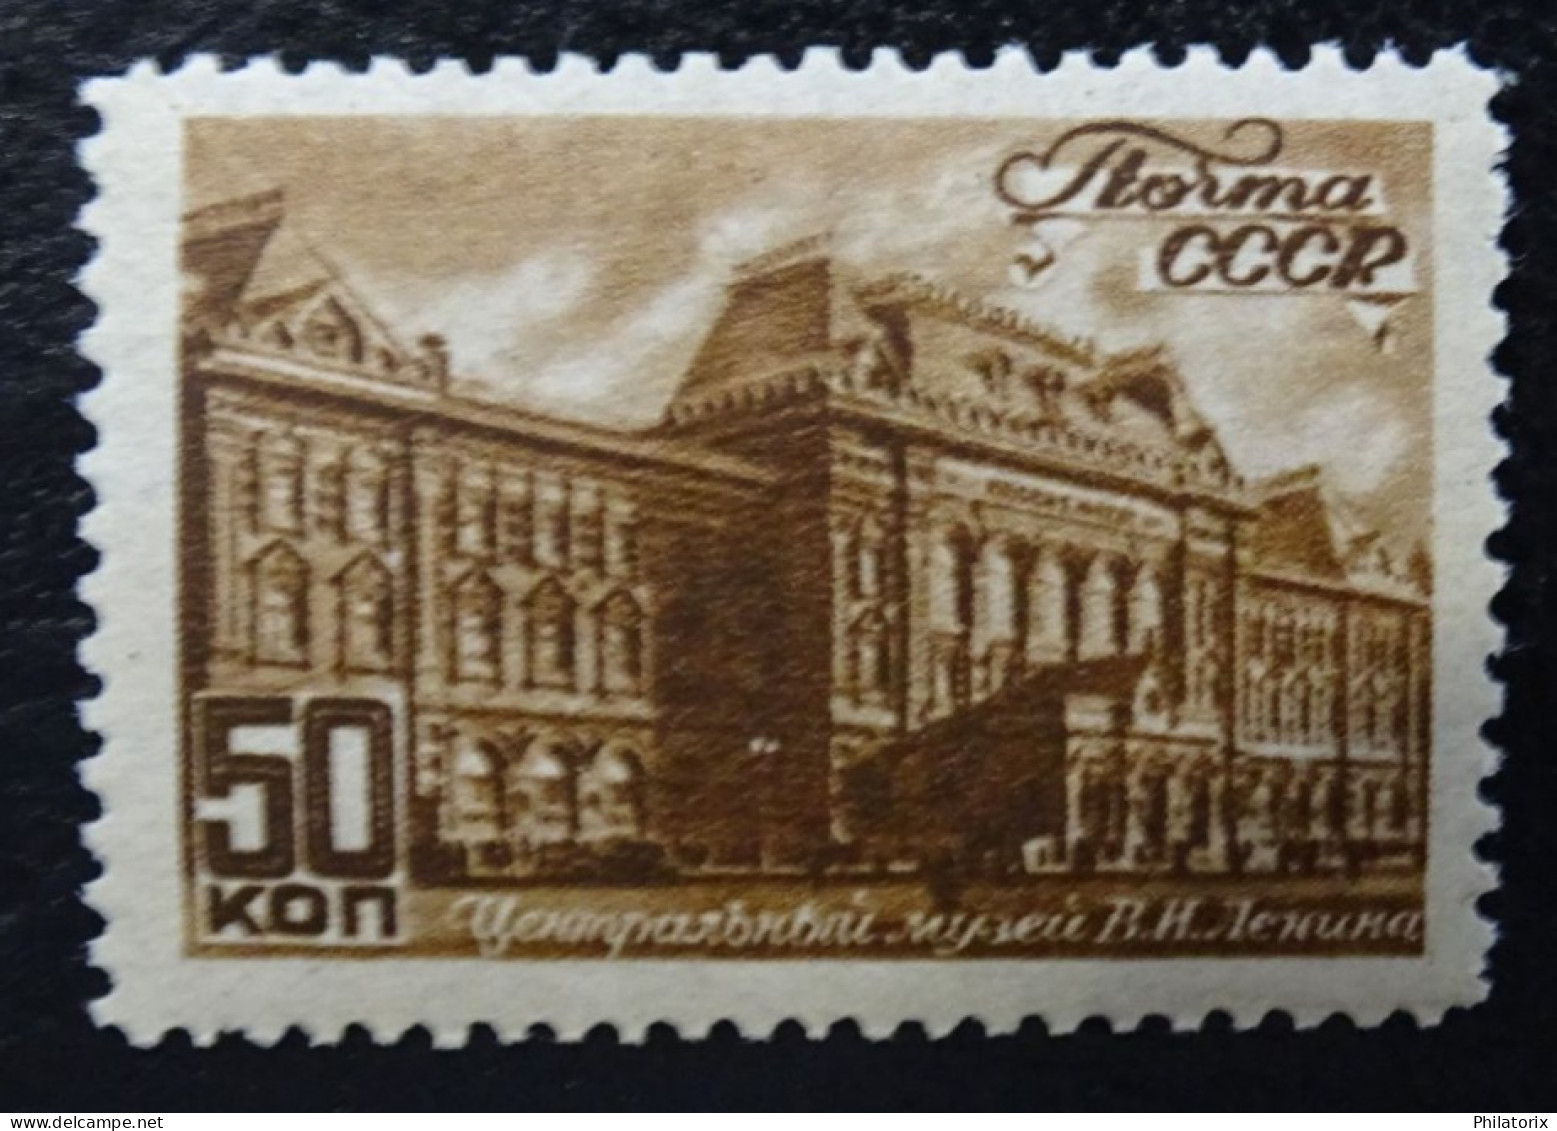 Sowjetunion Mi 1061 ** , Sc 1064 MNH , Ansichten Von Moskau - Unused Stamps